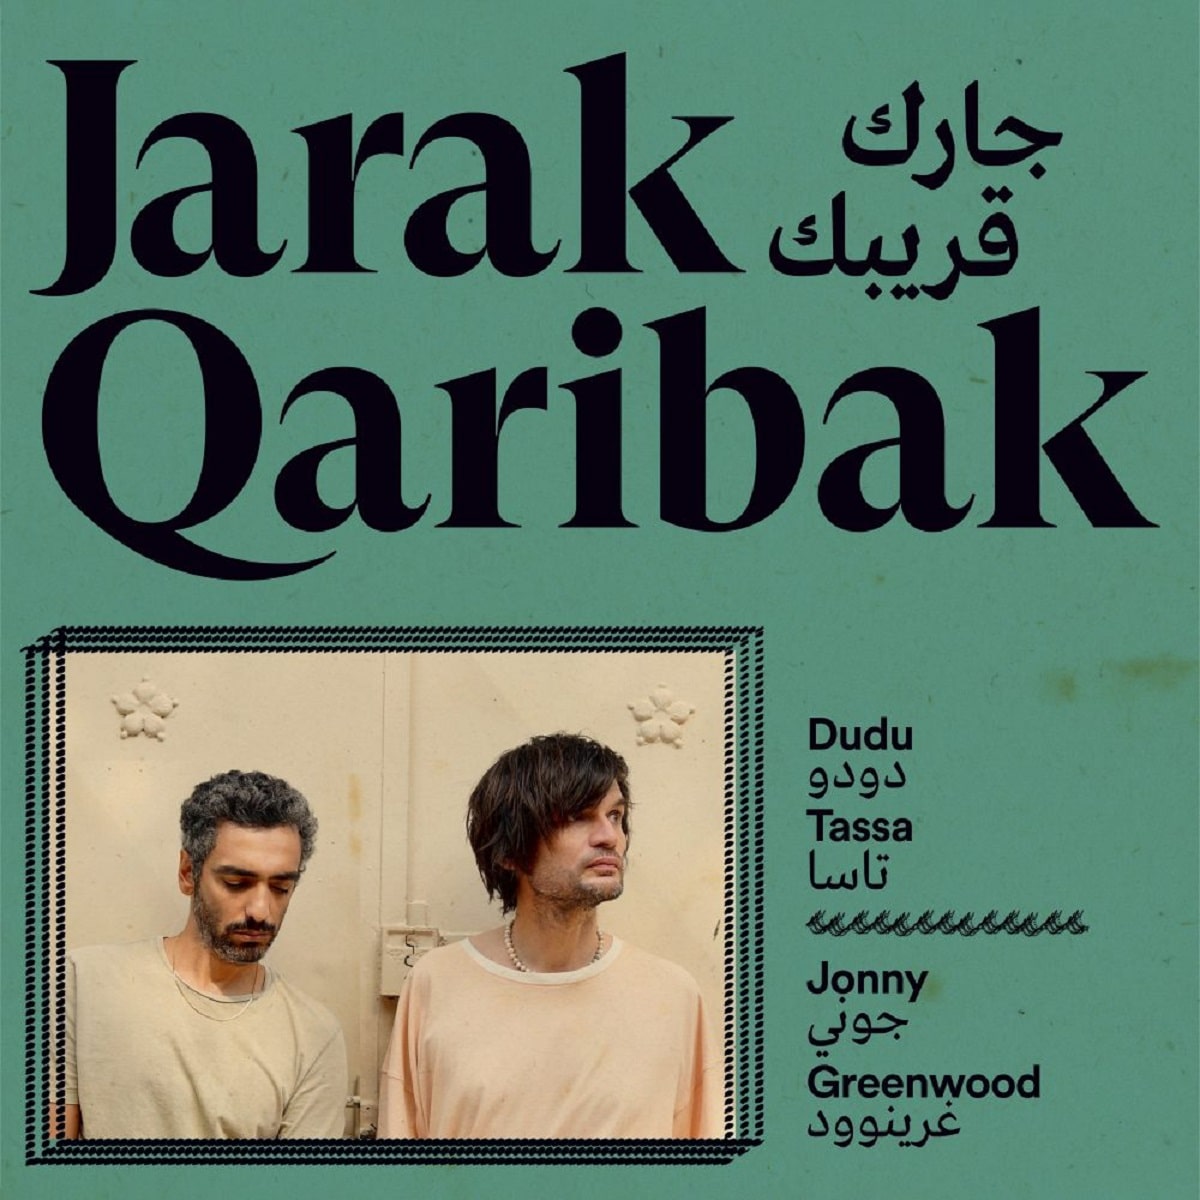 Jarak Qaribak - Jonny Greenwood y Dudu Tassa